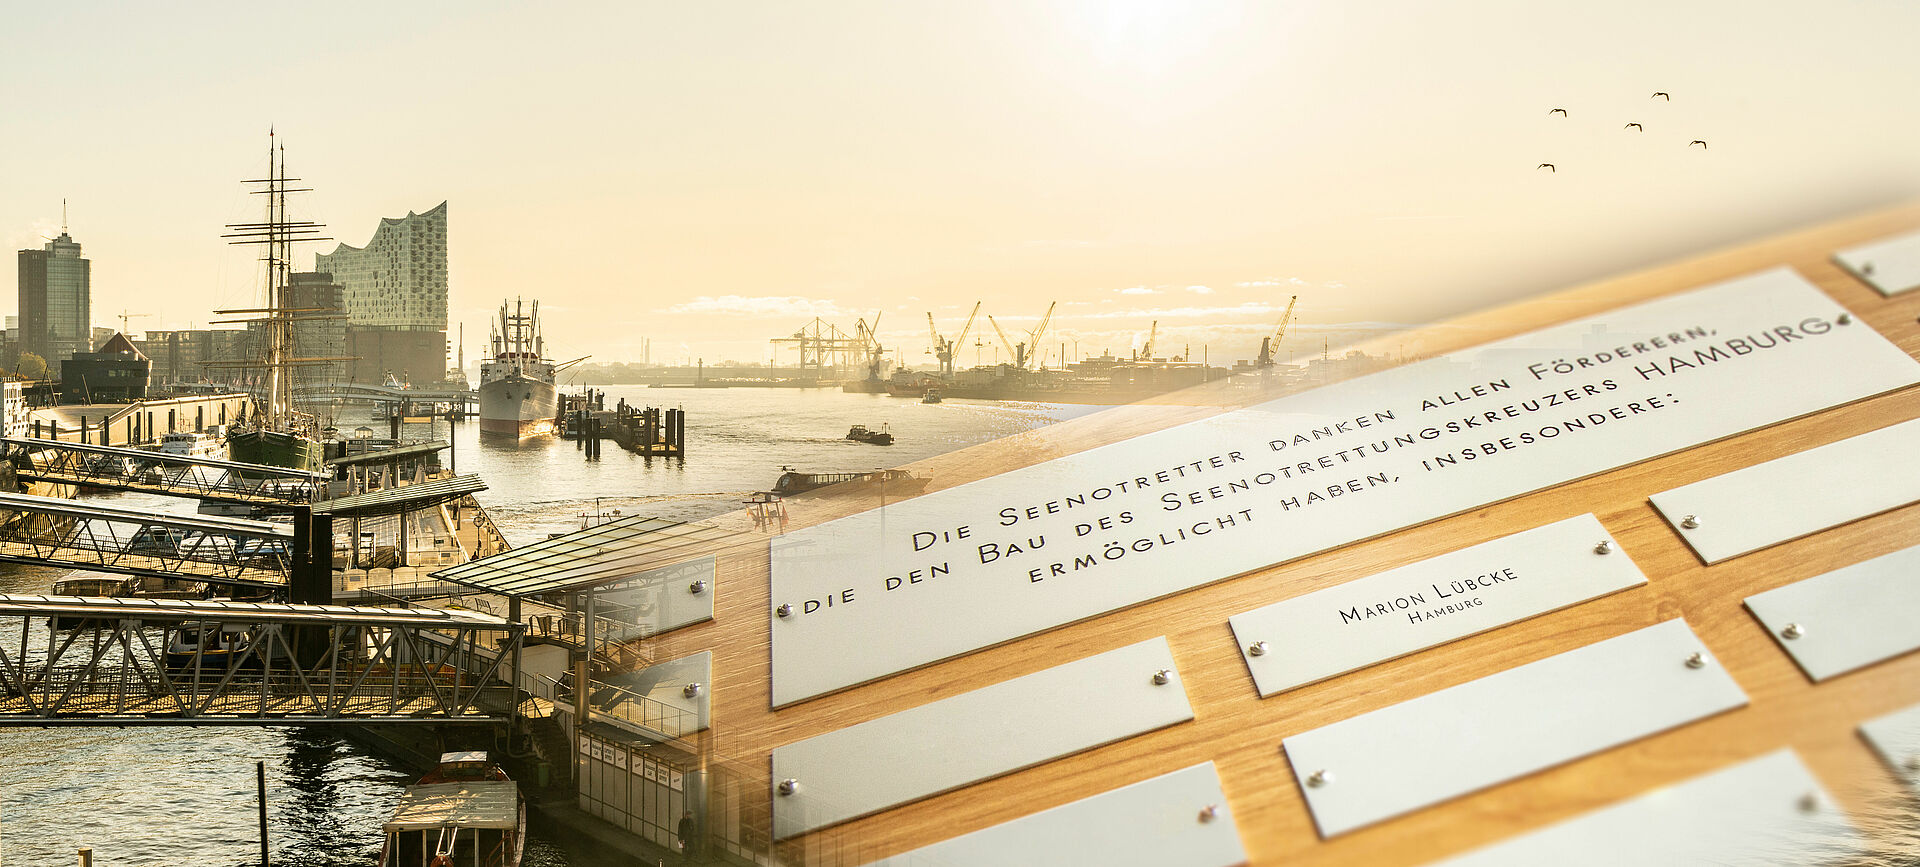 Eine Holztafel mit Aluminium-Schildern mit Namen von Spendern. Im Hintergrund die Silhouette des Hamburger Hafens.